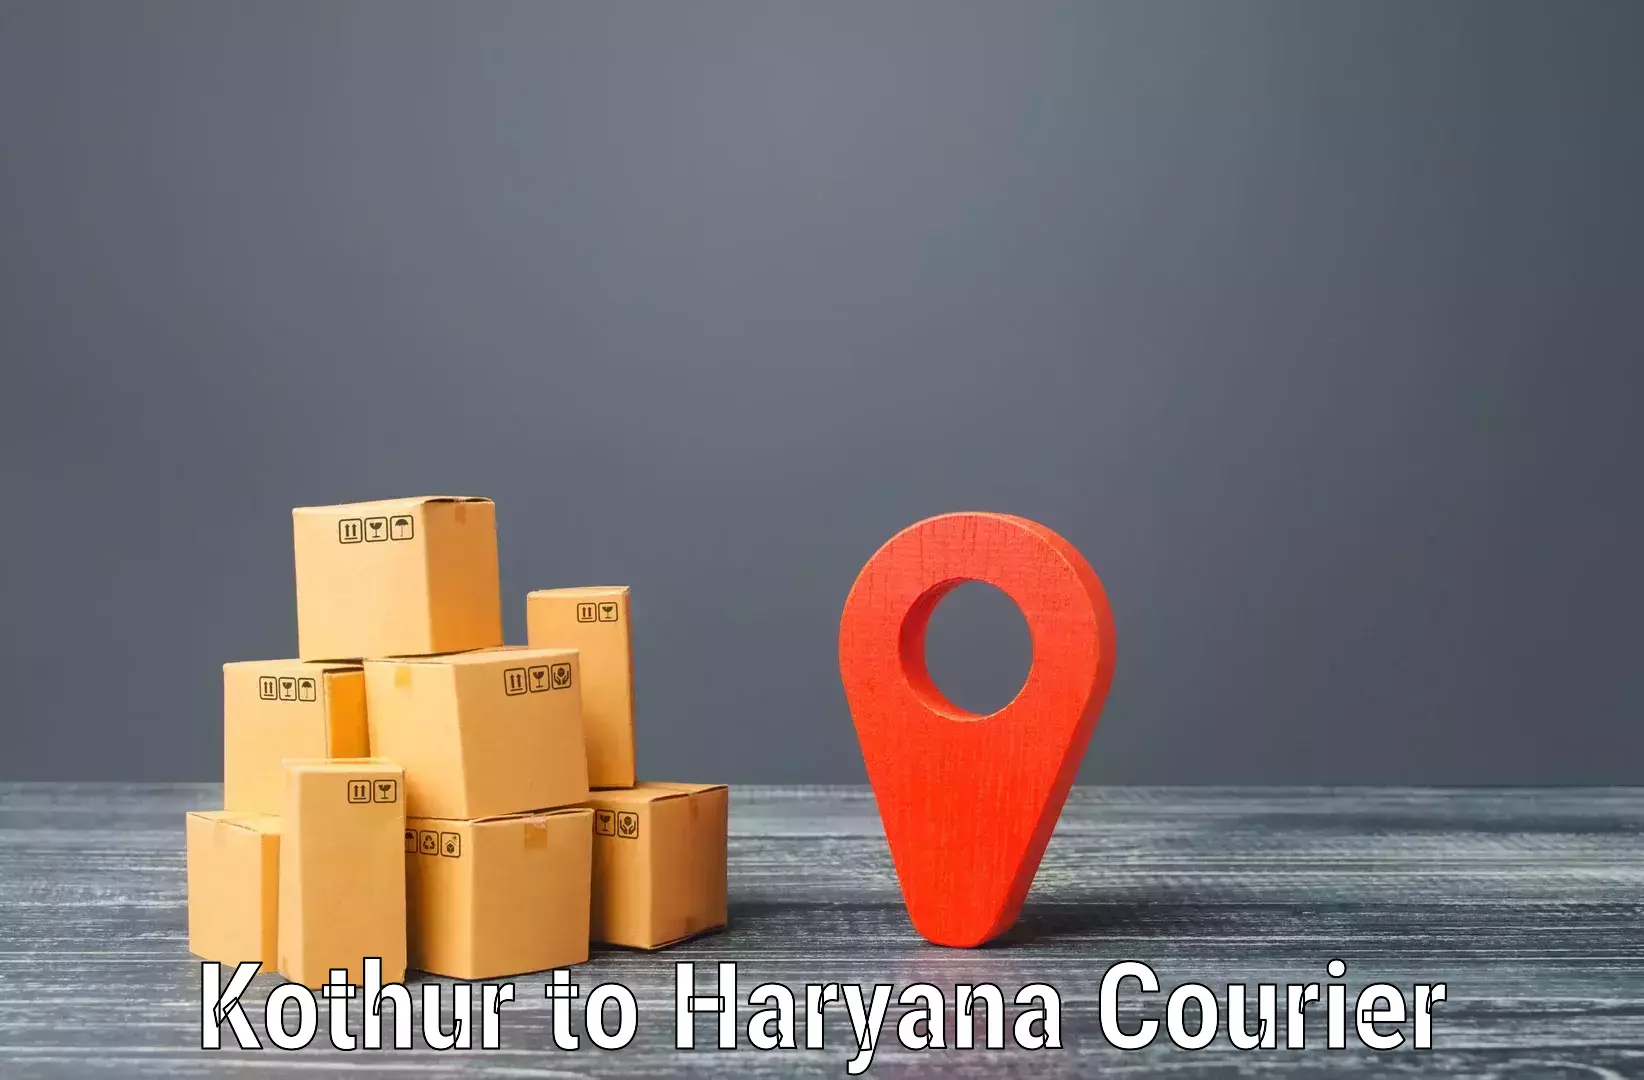 Door-to-door freight service Kothur to NCR Haryana